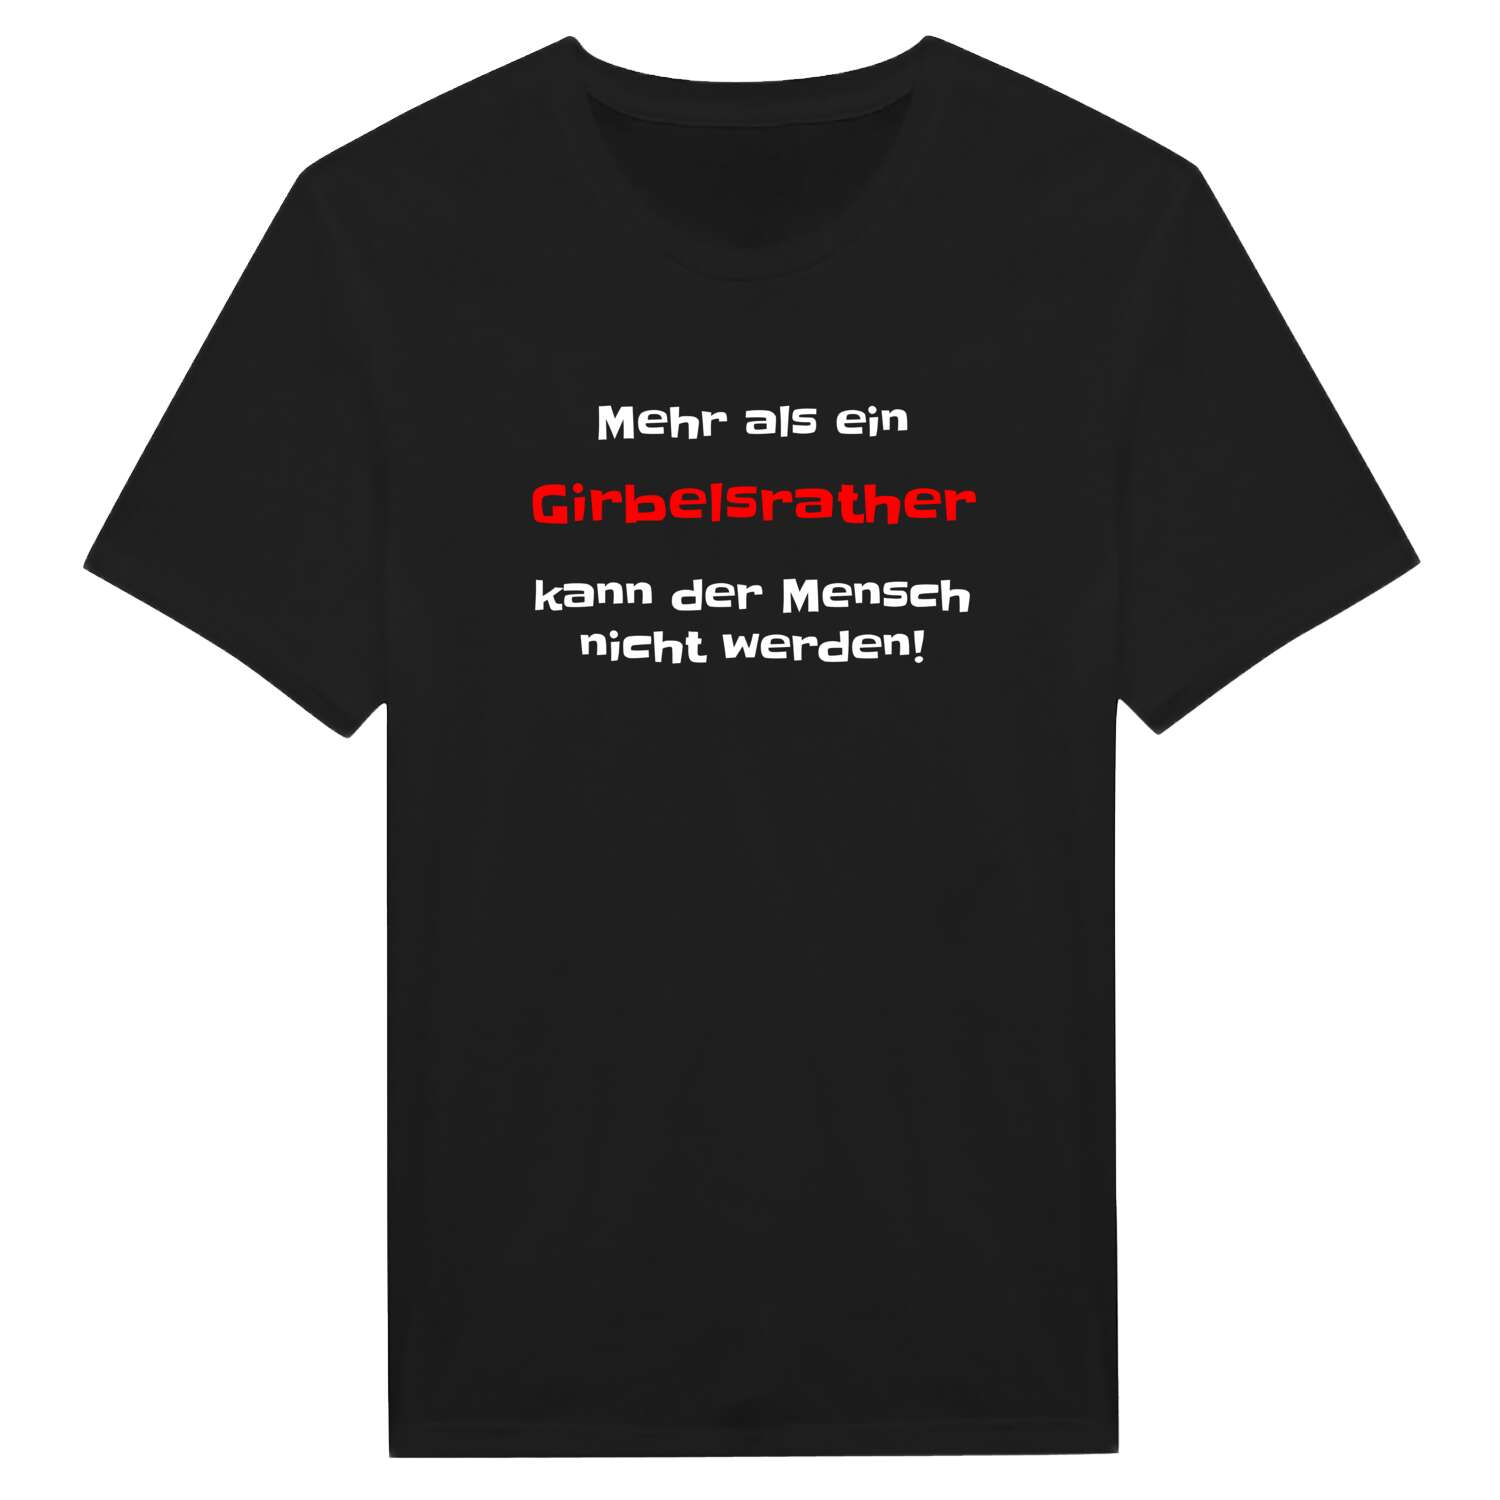 Girbelsrath T-Shirt »Mehr als ein«